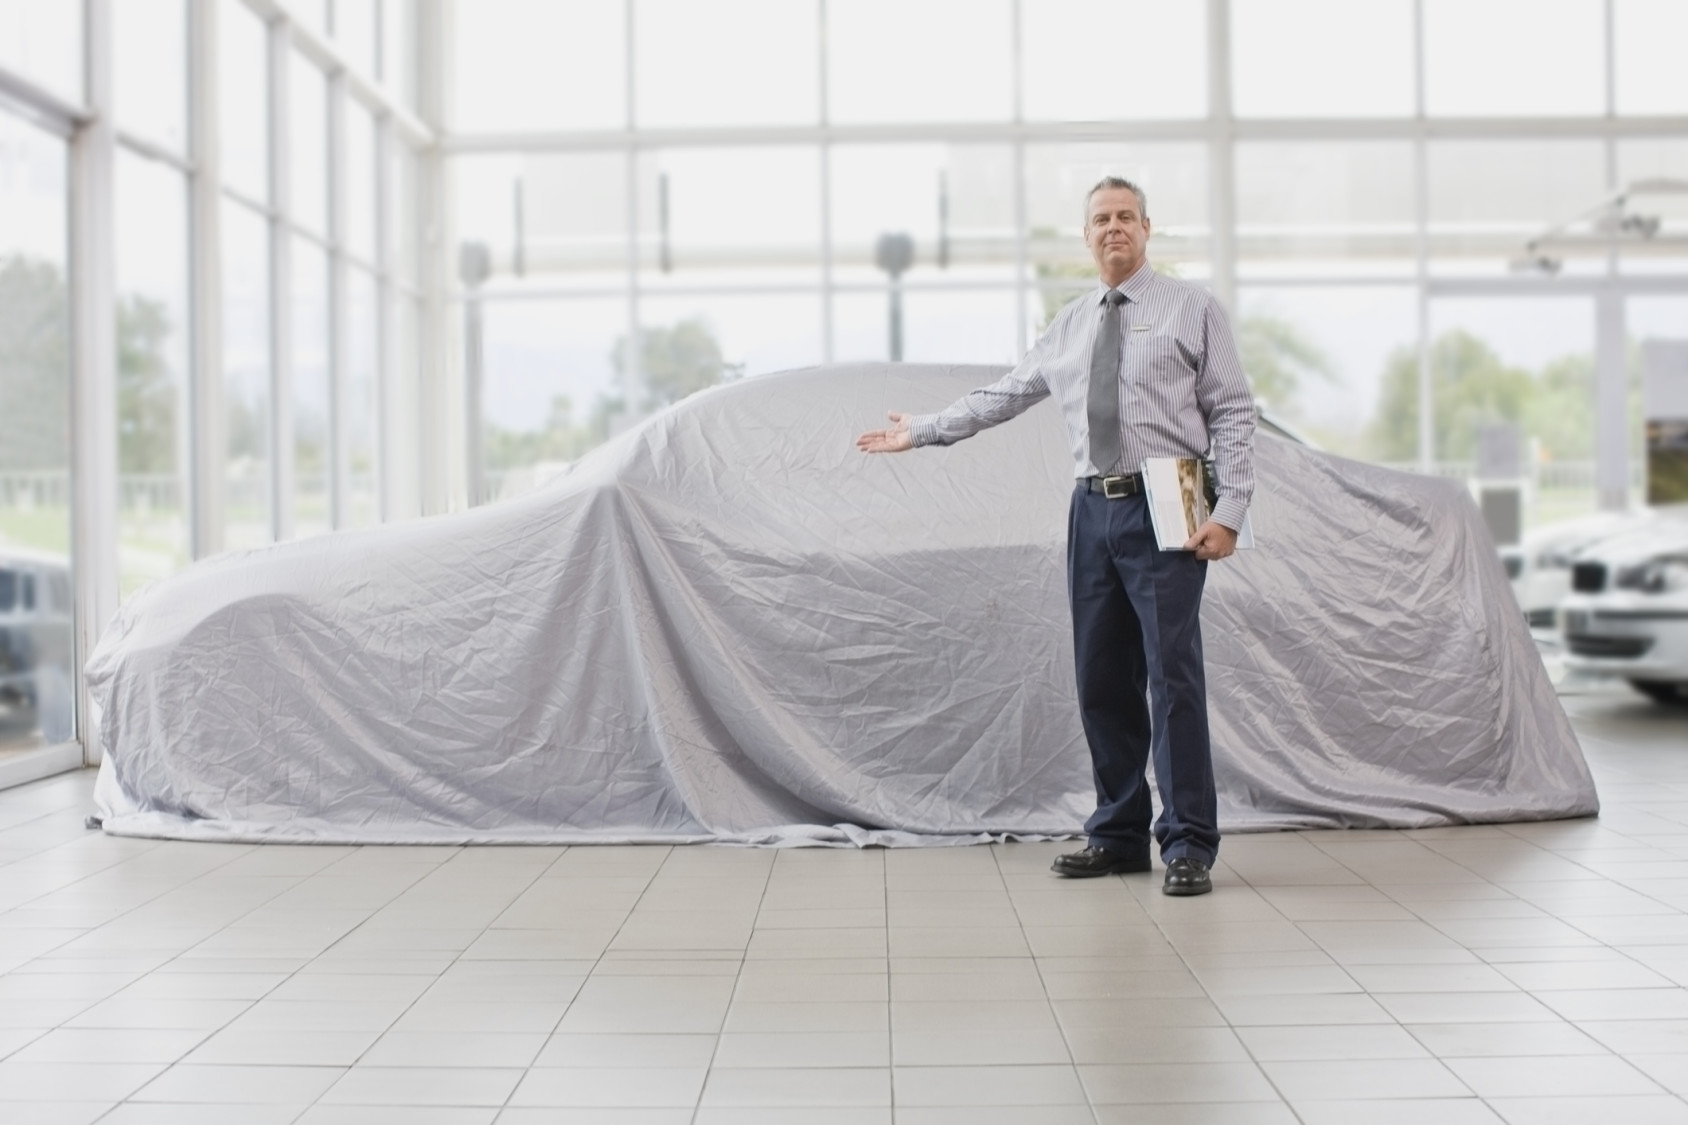 Car salesman displaying car under cloth